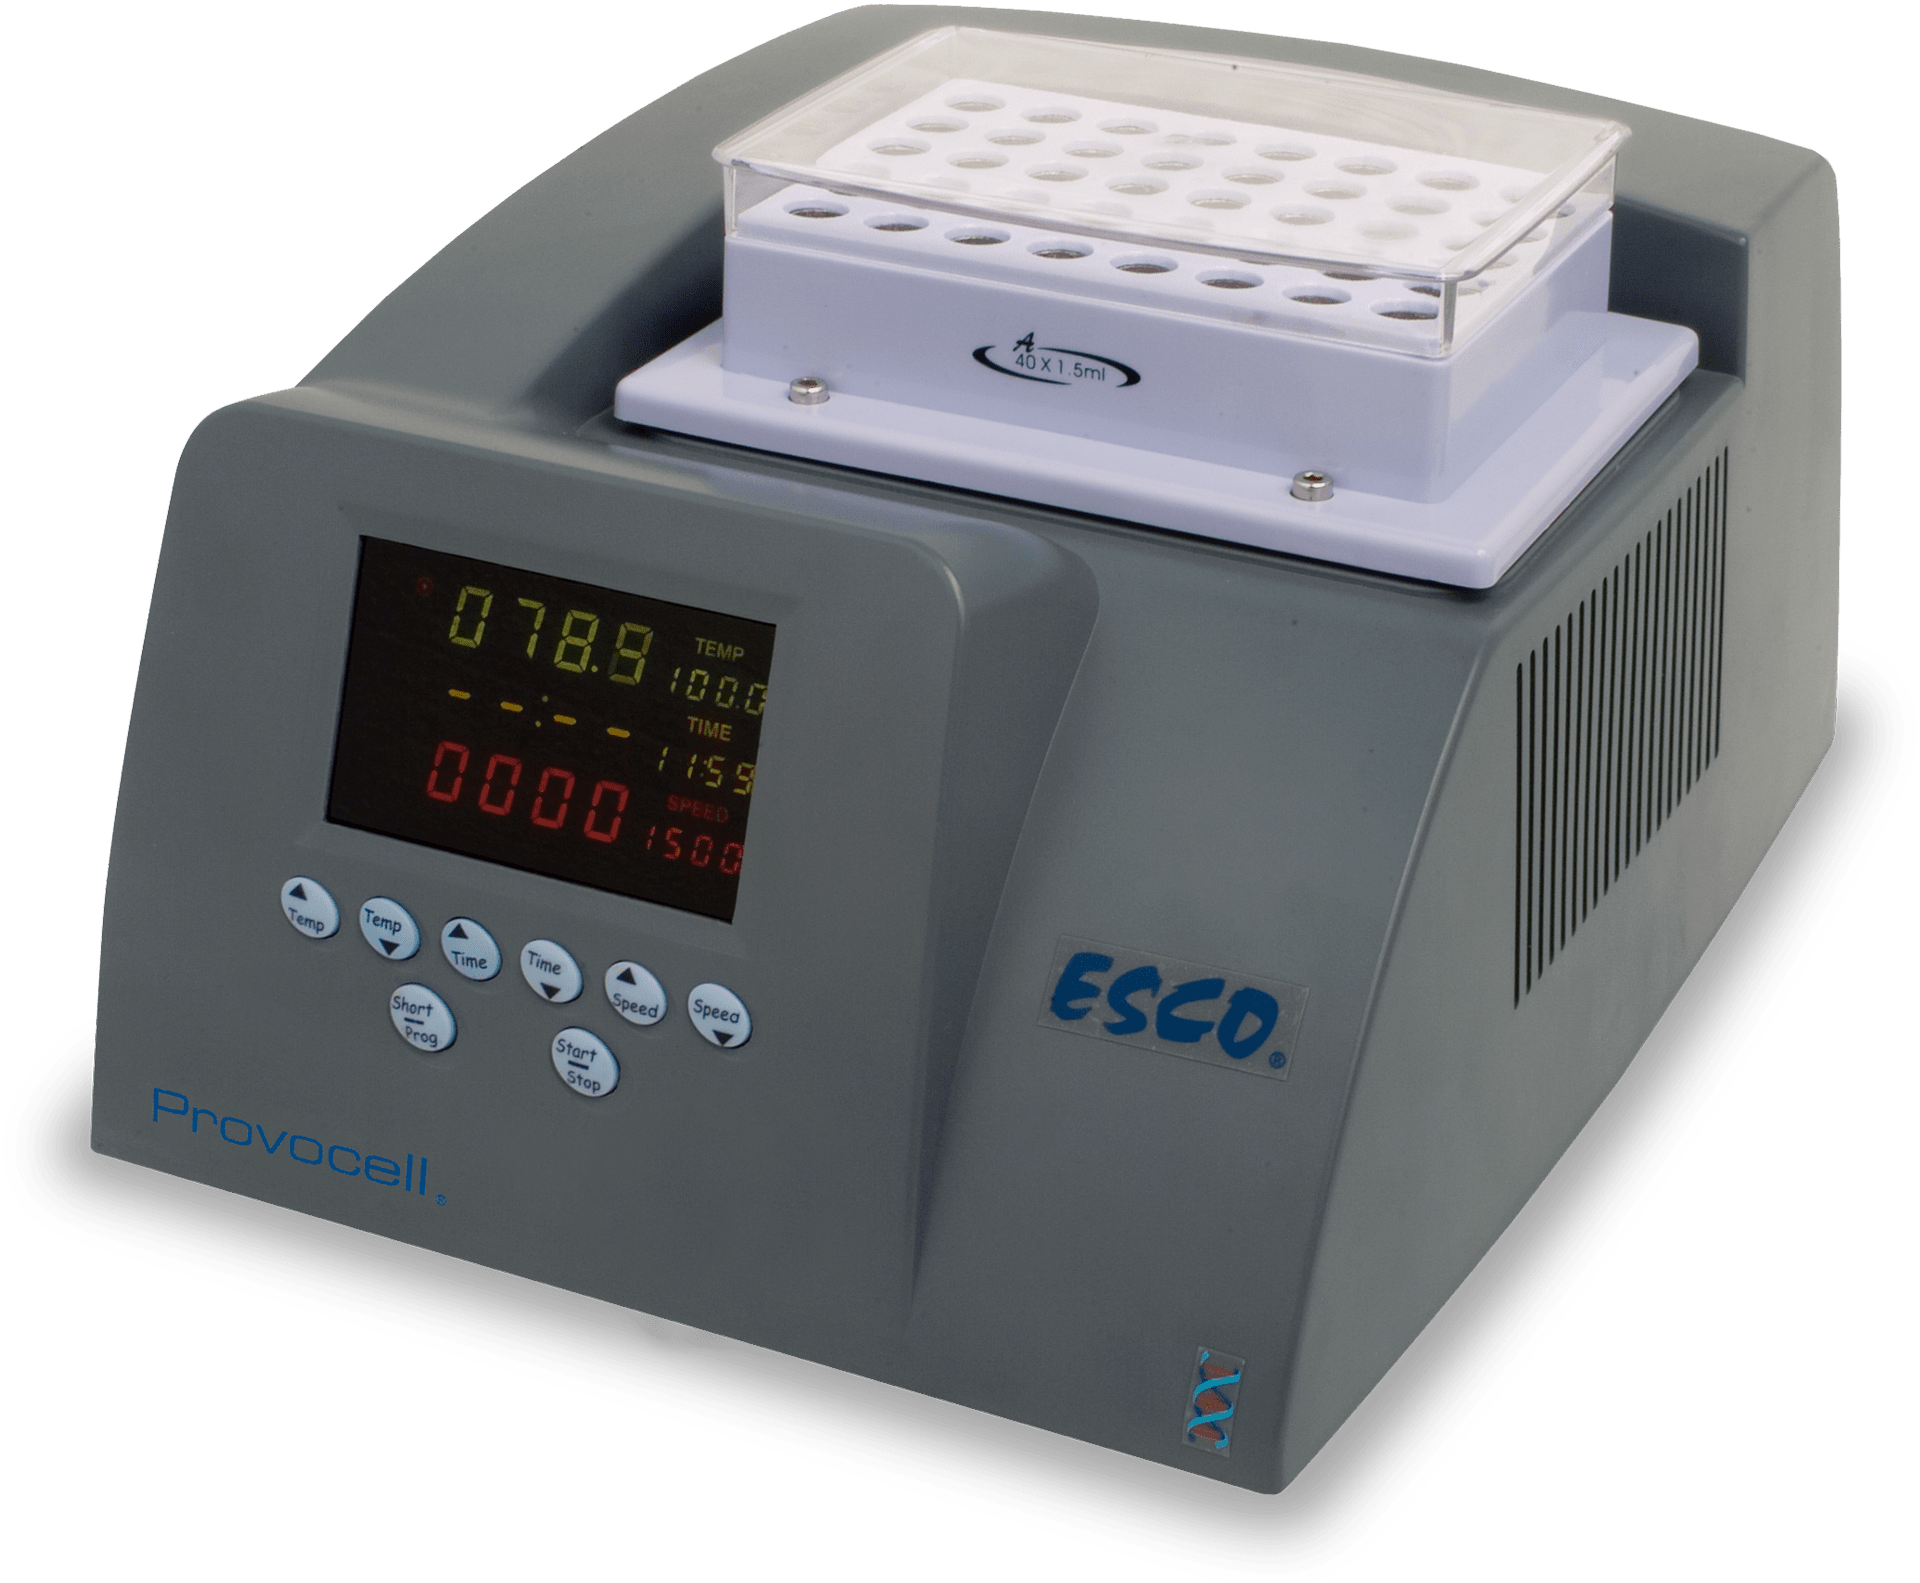 Инкубатор для микропланшетов IPS-2. Фотометр для микропланшетов IMARK. Спектрофотометр Epoch для микропланшетов. Шейкер-инкубатор для планшетов "Thermo FS" цена. Шейкер термостат